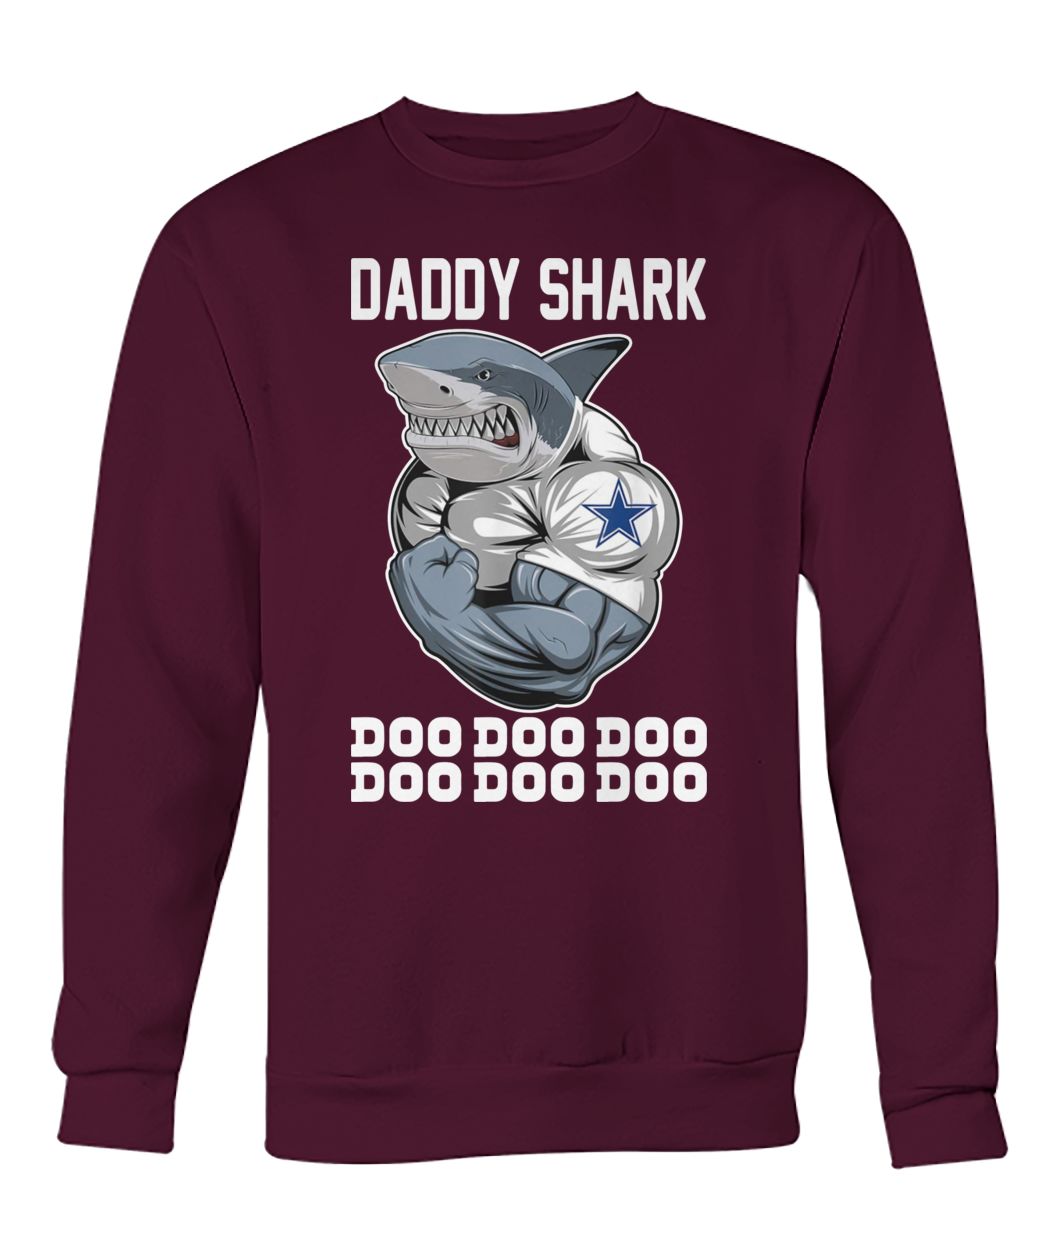 Daddy shark body building dallas cowboy doo doo doo crew neck sweatshirt